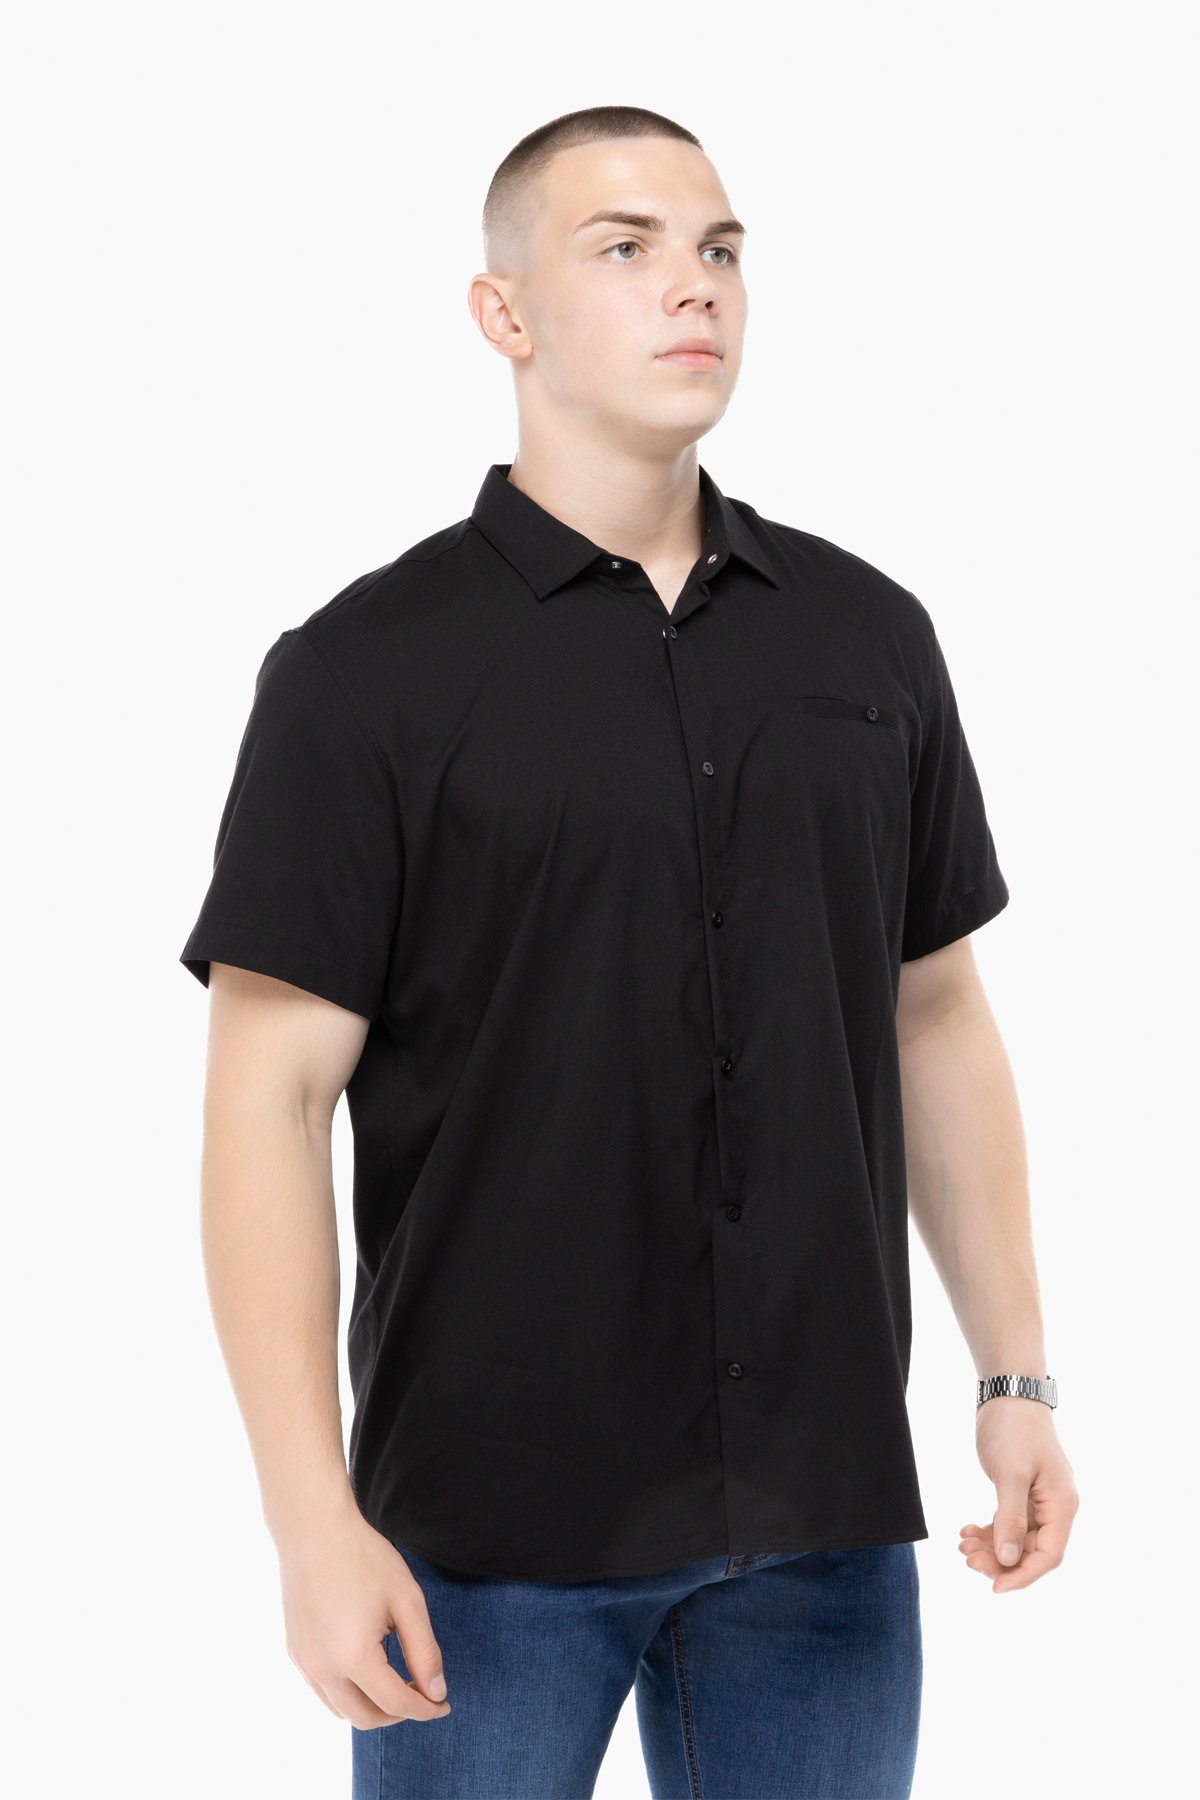 Рубашка классическая однотонная мужская Stendo 235004 4XL Черный (2000989740193)